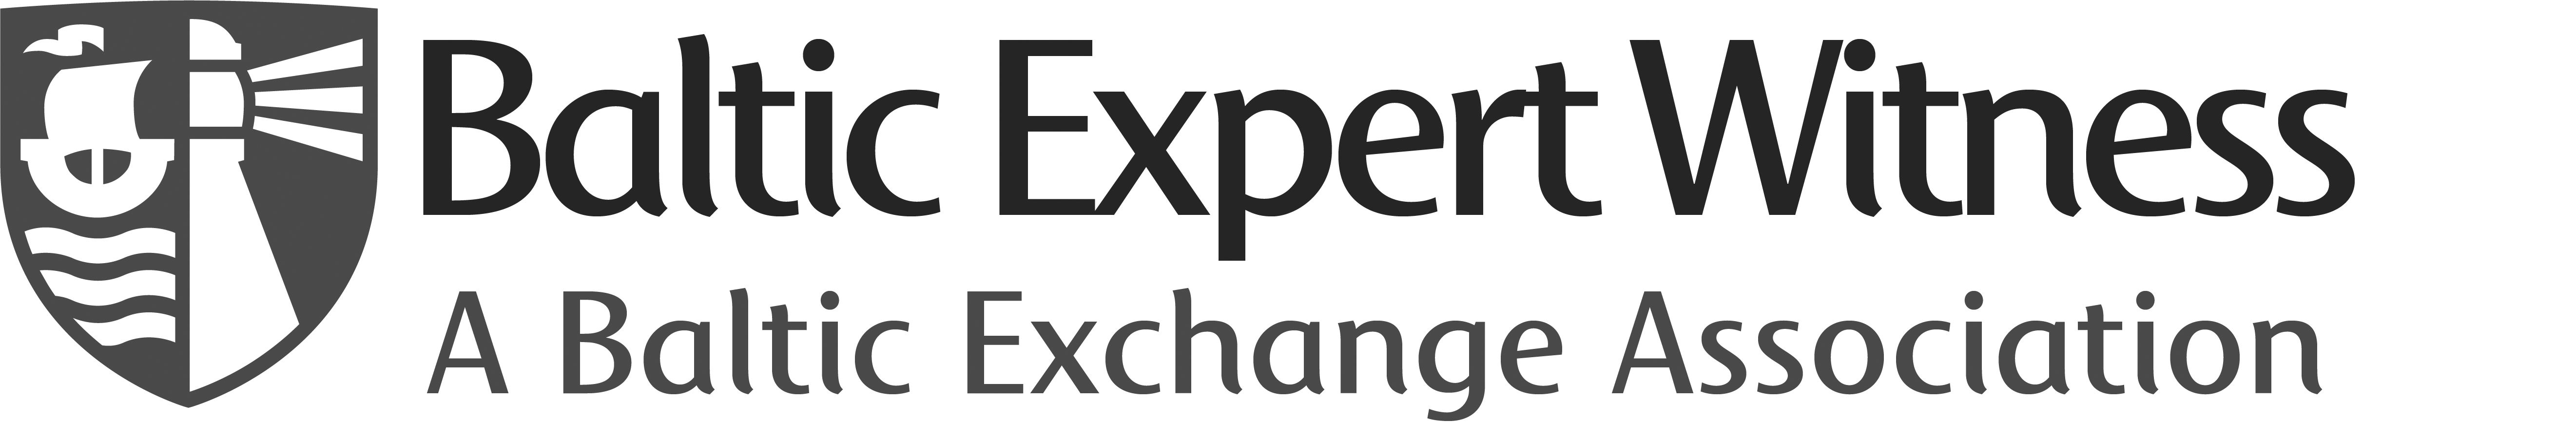 dd-balticexpertwitness-logo2